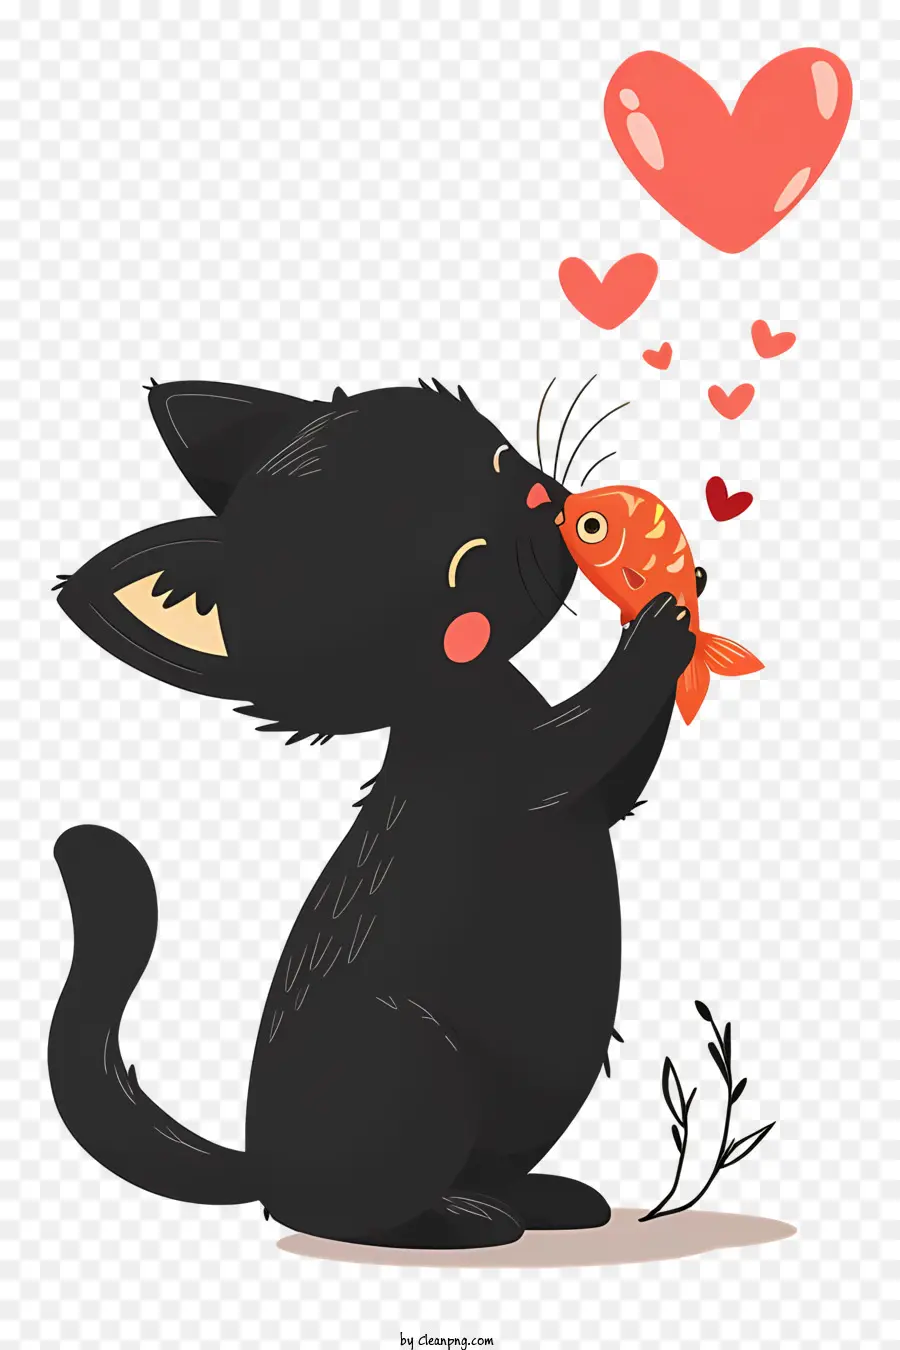 Katze küsst Fisch schwarze Katze lächelte Katze süße Katze Schwanz zusammengerollt - Schwarze Katze sitzt mit Lächeln, Herzen herum